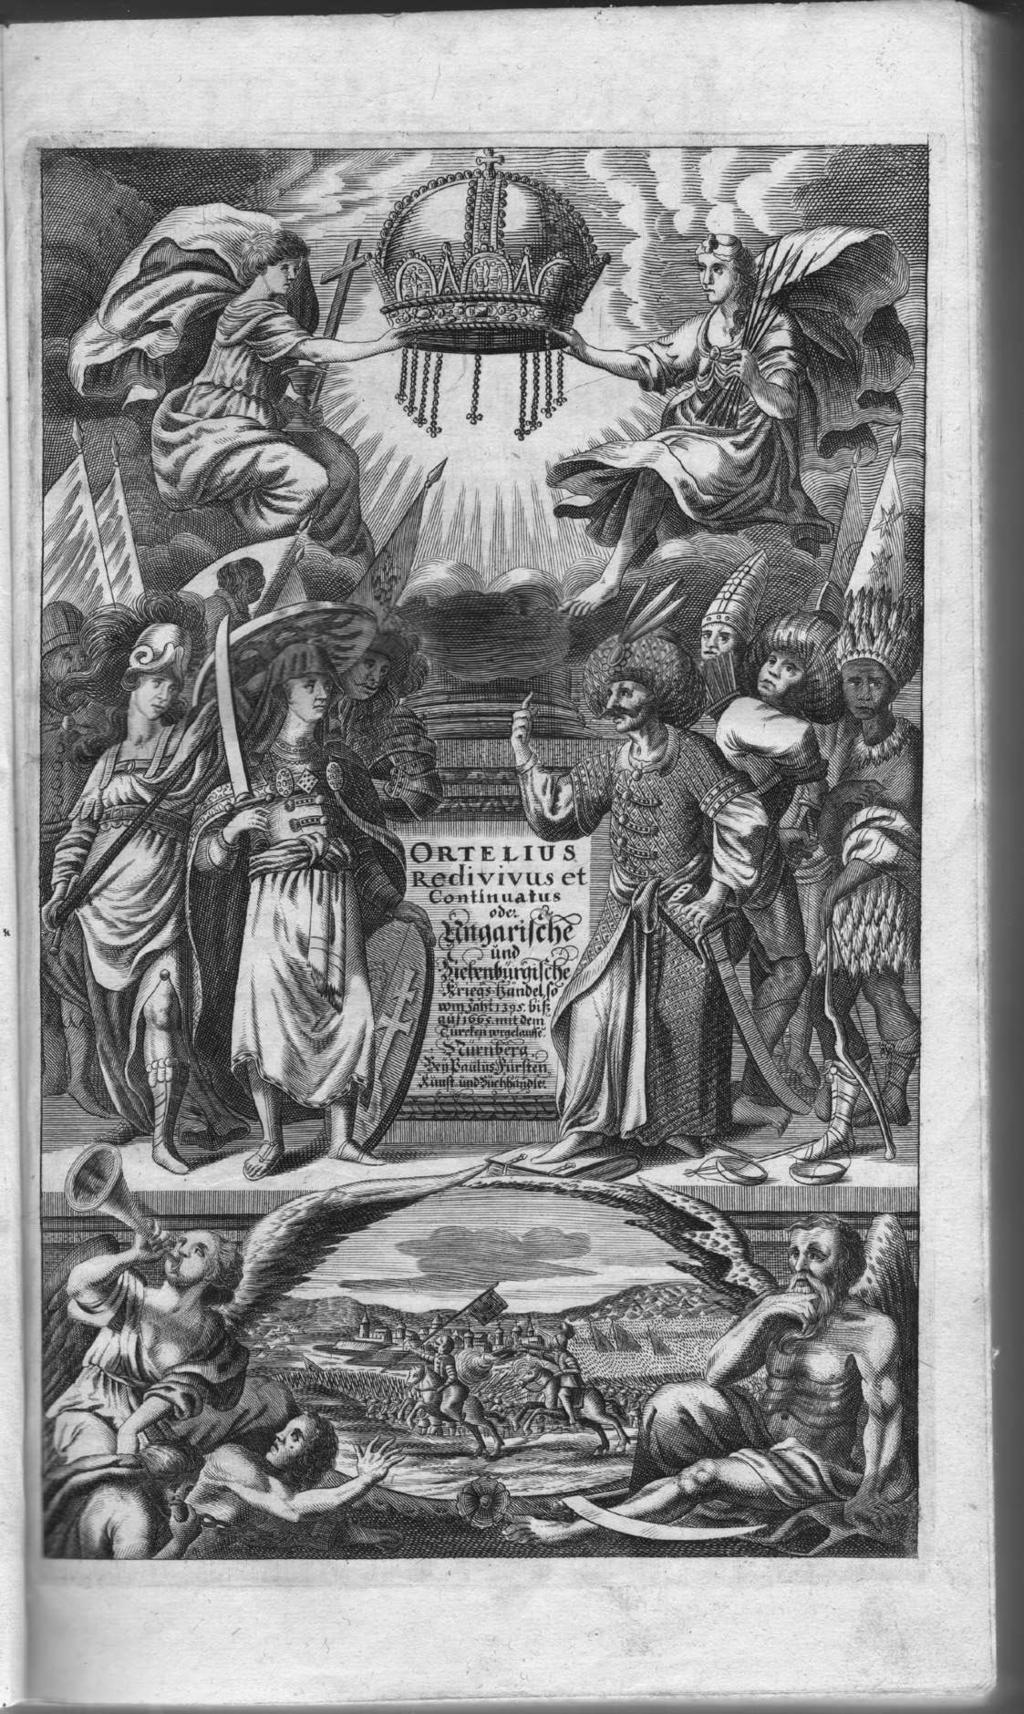 13. Hieronymus Oertel [Ortelius]: Ortelius Redivivus.